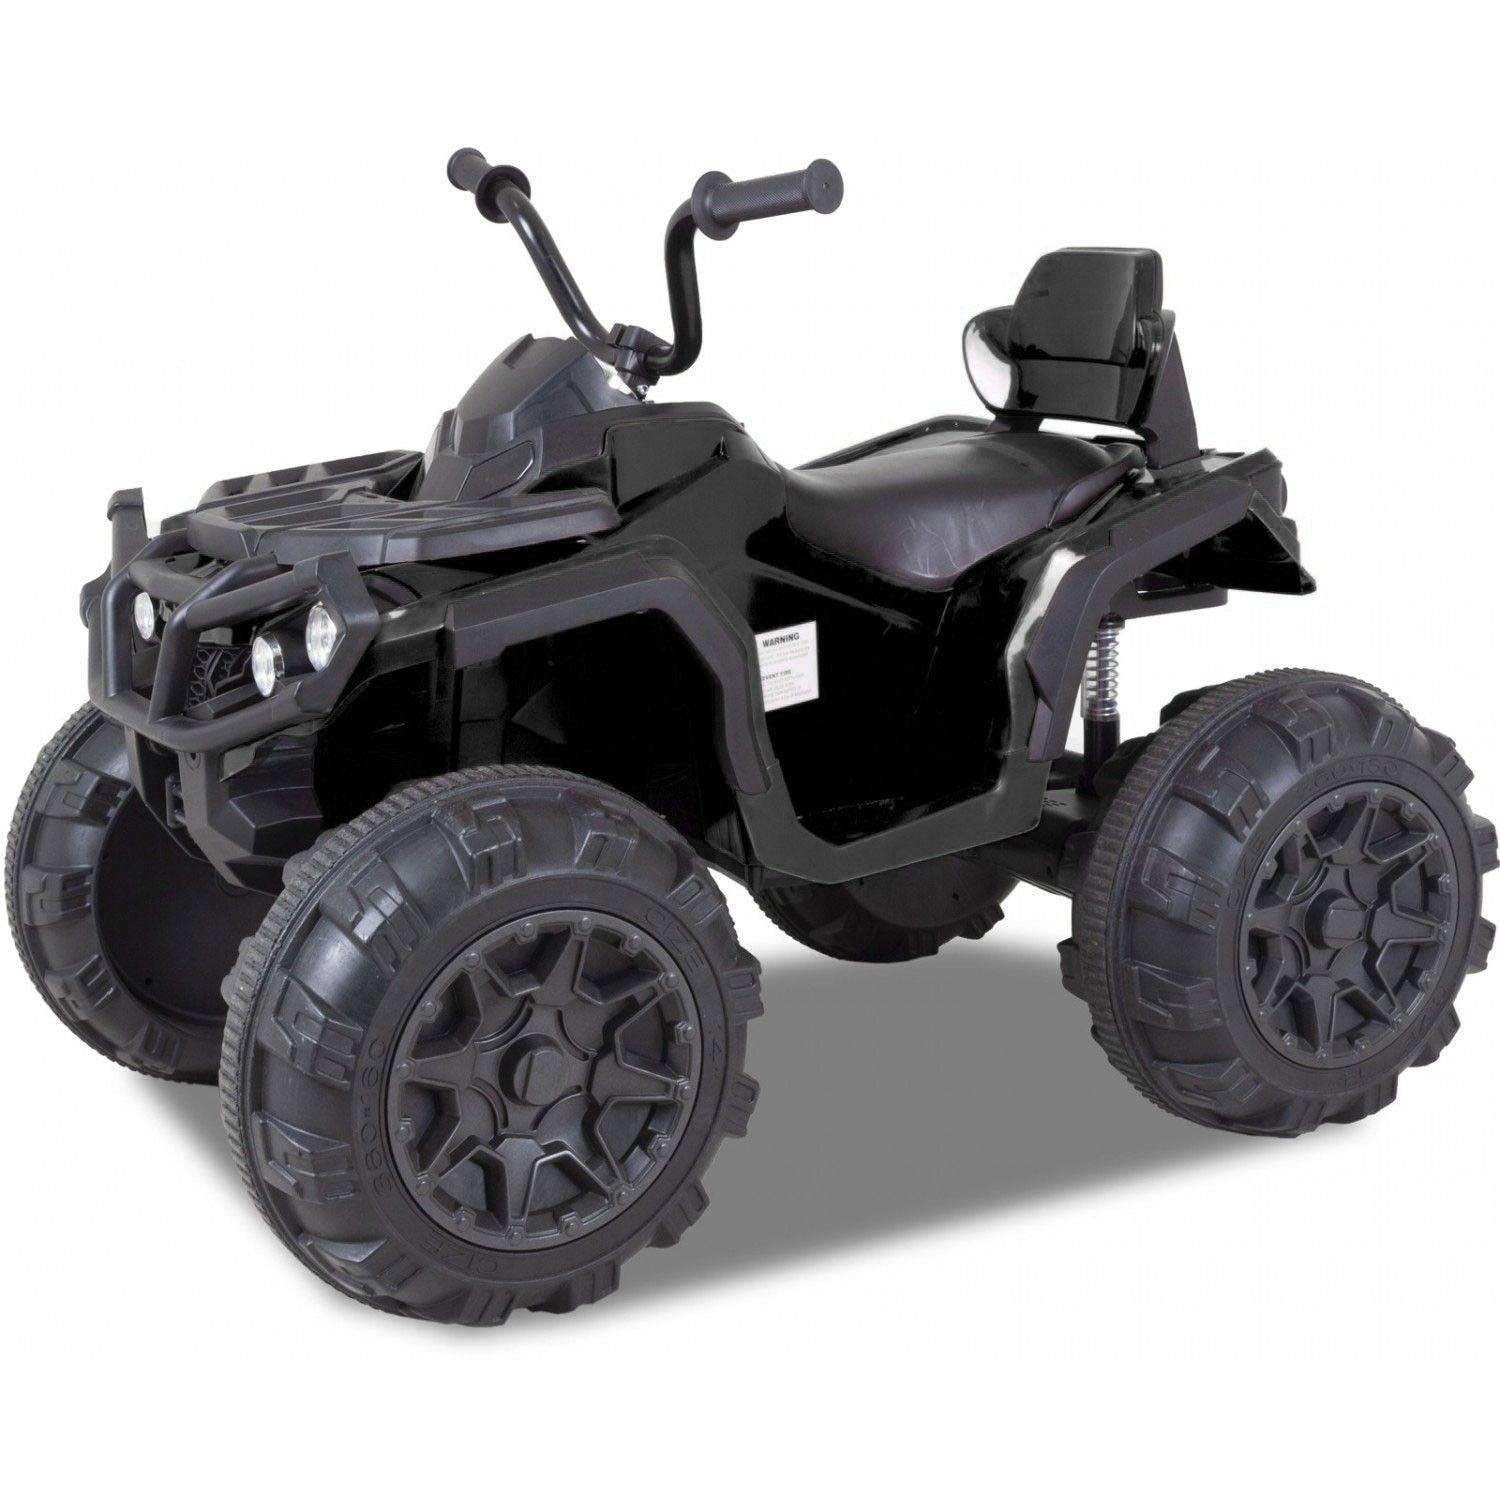 Kijana ATV Quad électrique pour enfants 12V -noir